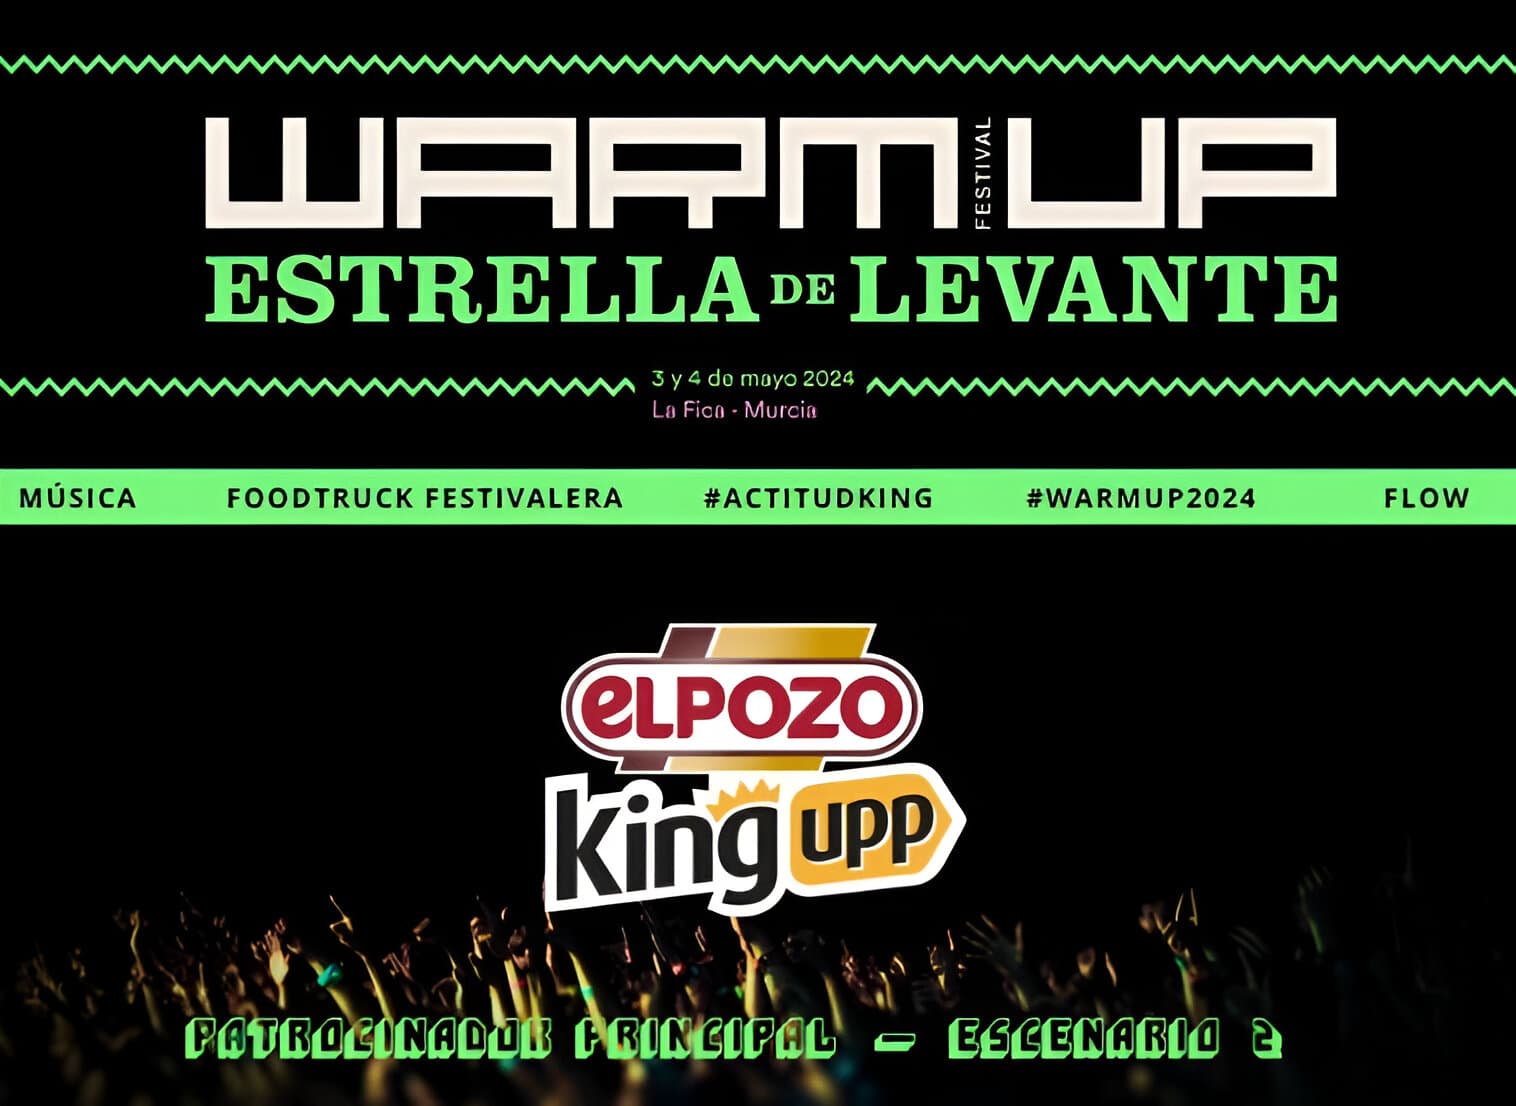 ElPozo King Upp se sube al escenario de  #WARMUP2024